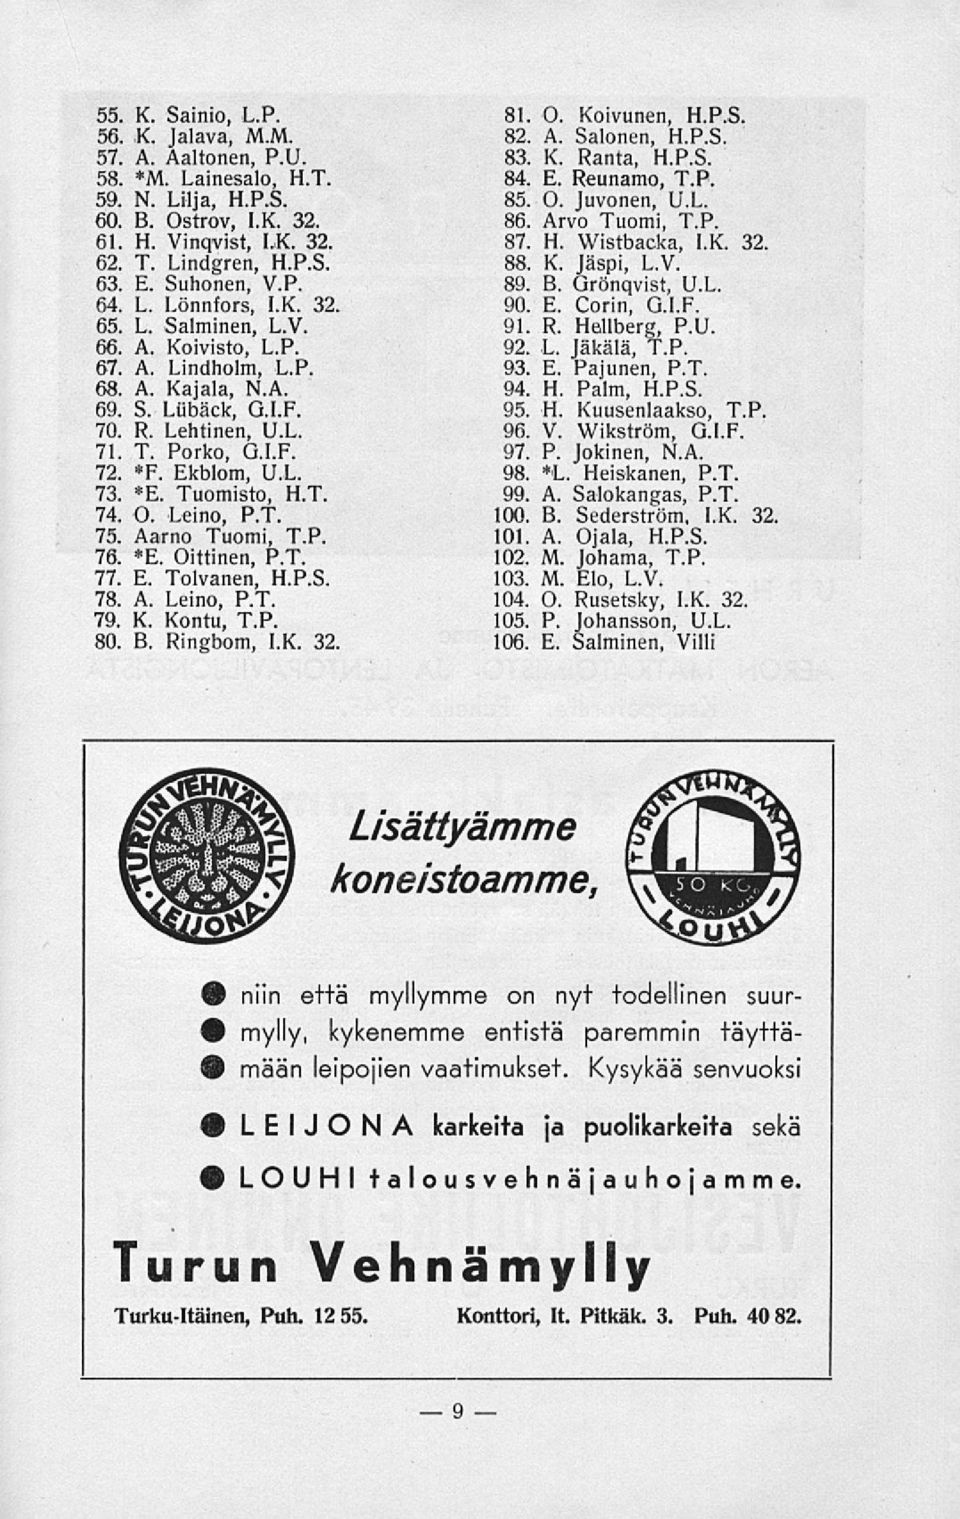 Tuomisto, H.T. 74. O. Leino, P.T. 75. Aarno Tuomi, T.P. 76. *E. Oittinen, P.T. 77. E. Tolvanen, H.P.S. 78. A. Leino, P.T. 79. K. Kontu, T.P. 80. B. Ringbom, LK. 32. 81. O. Koivunen, H.P.S. 82. A. Salonen, H.